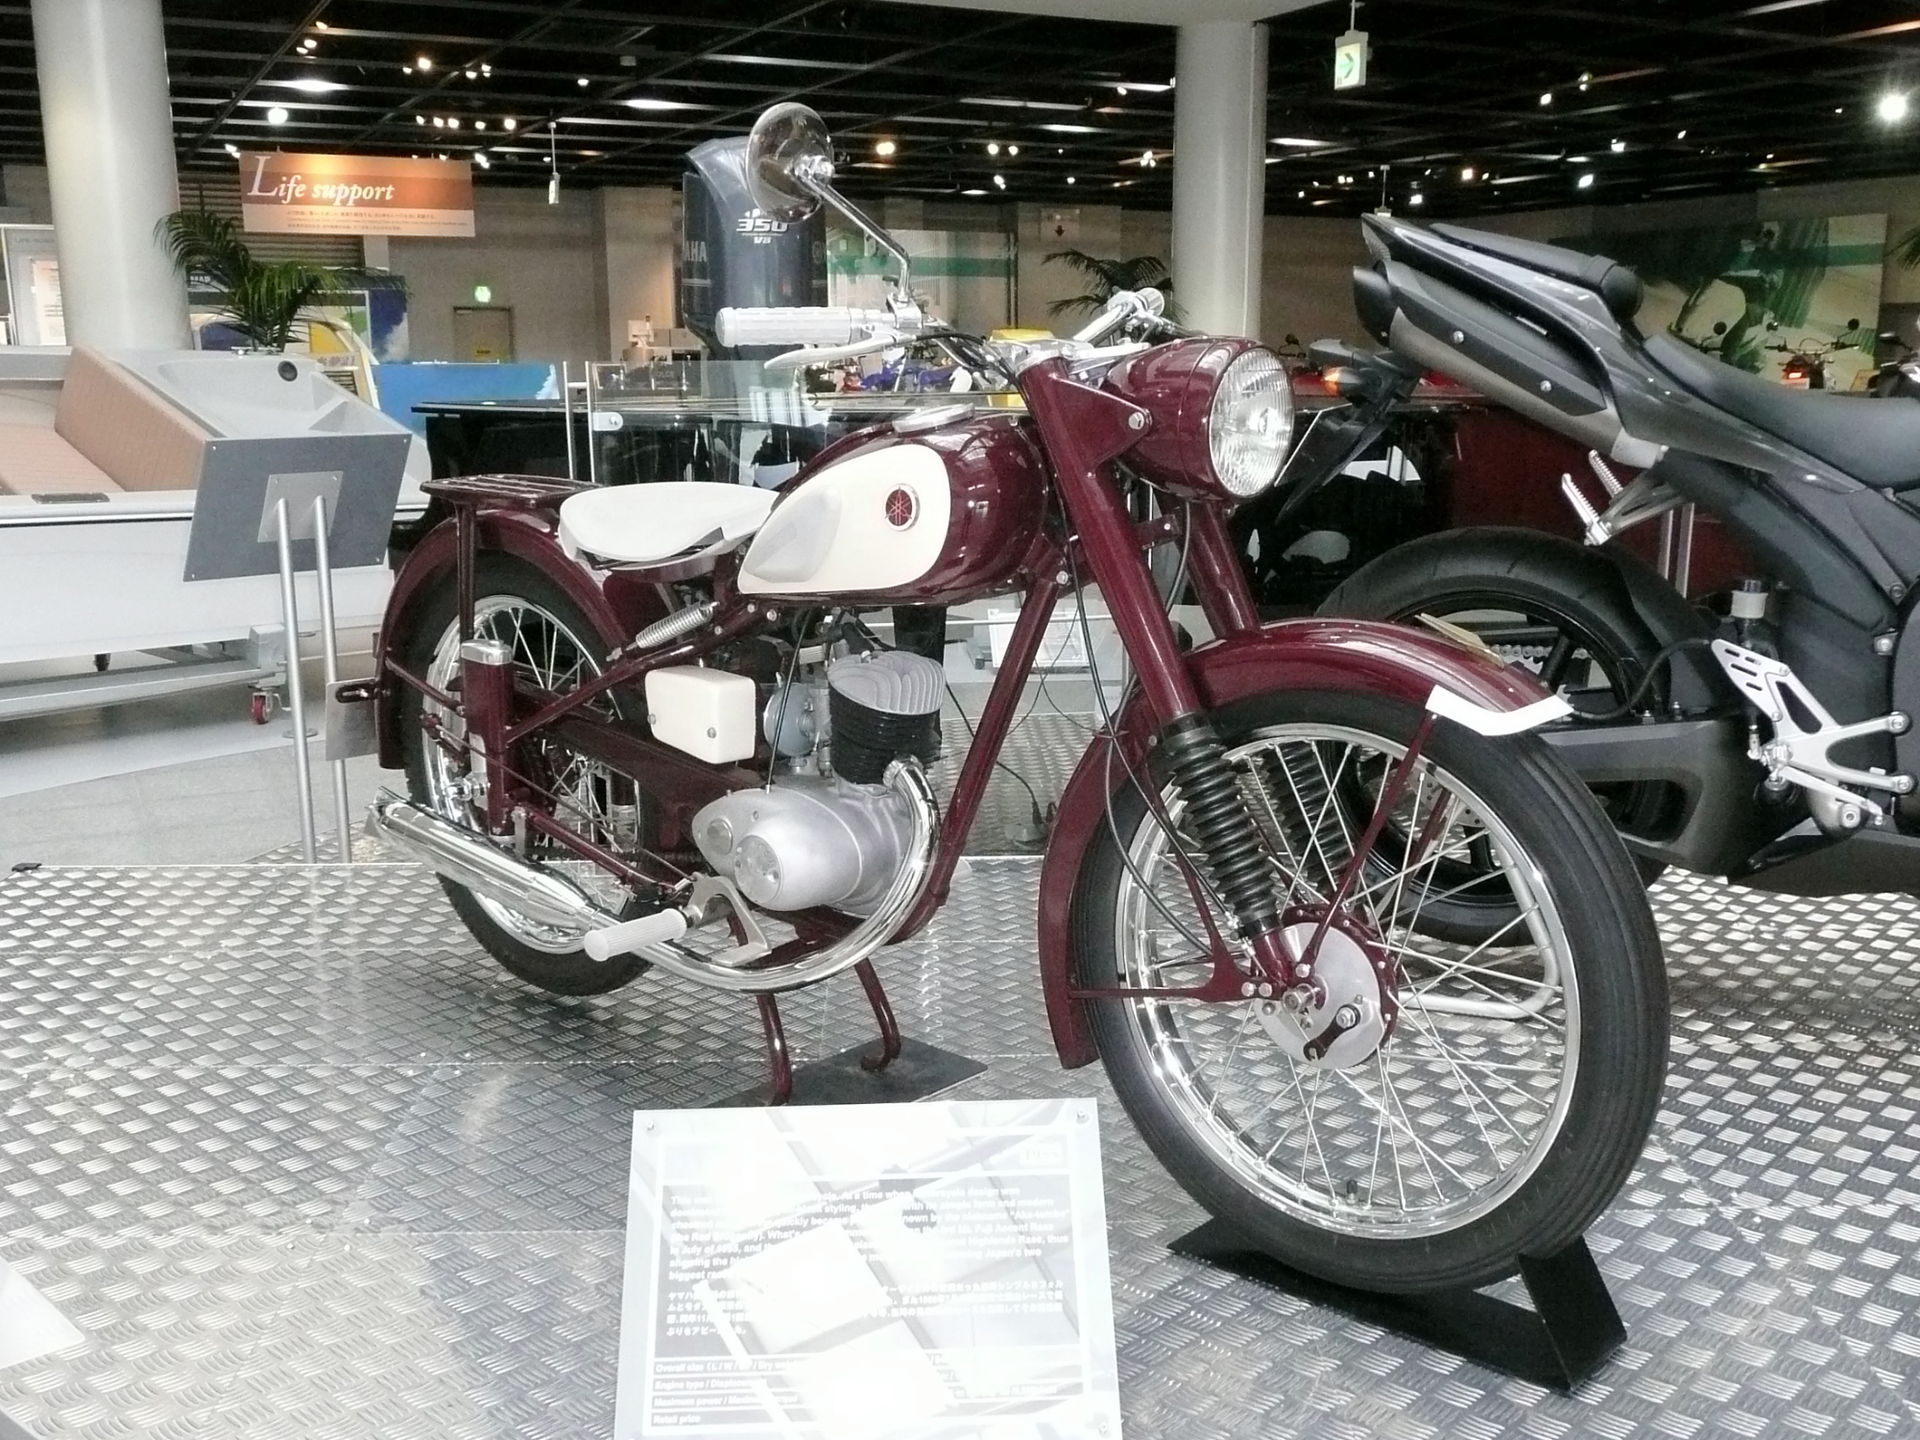 1955 – Honda is born